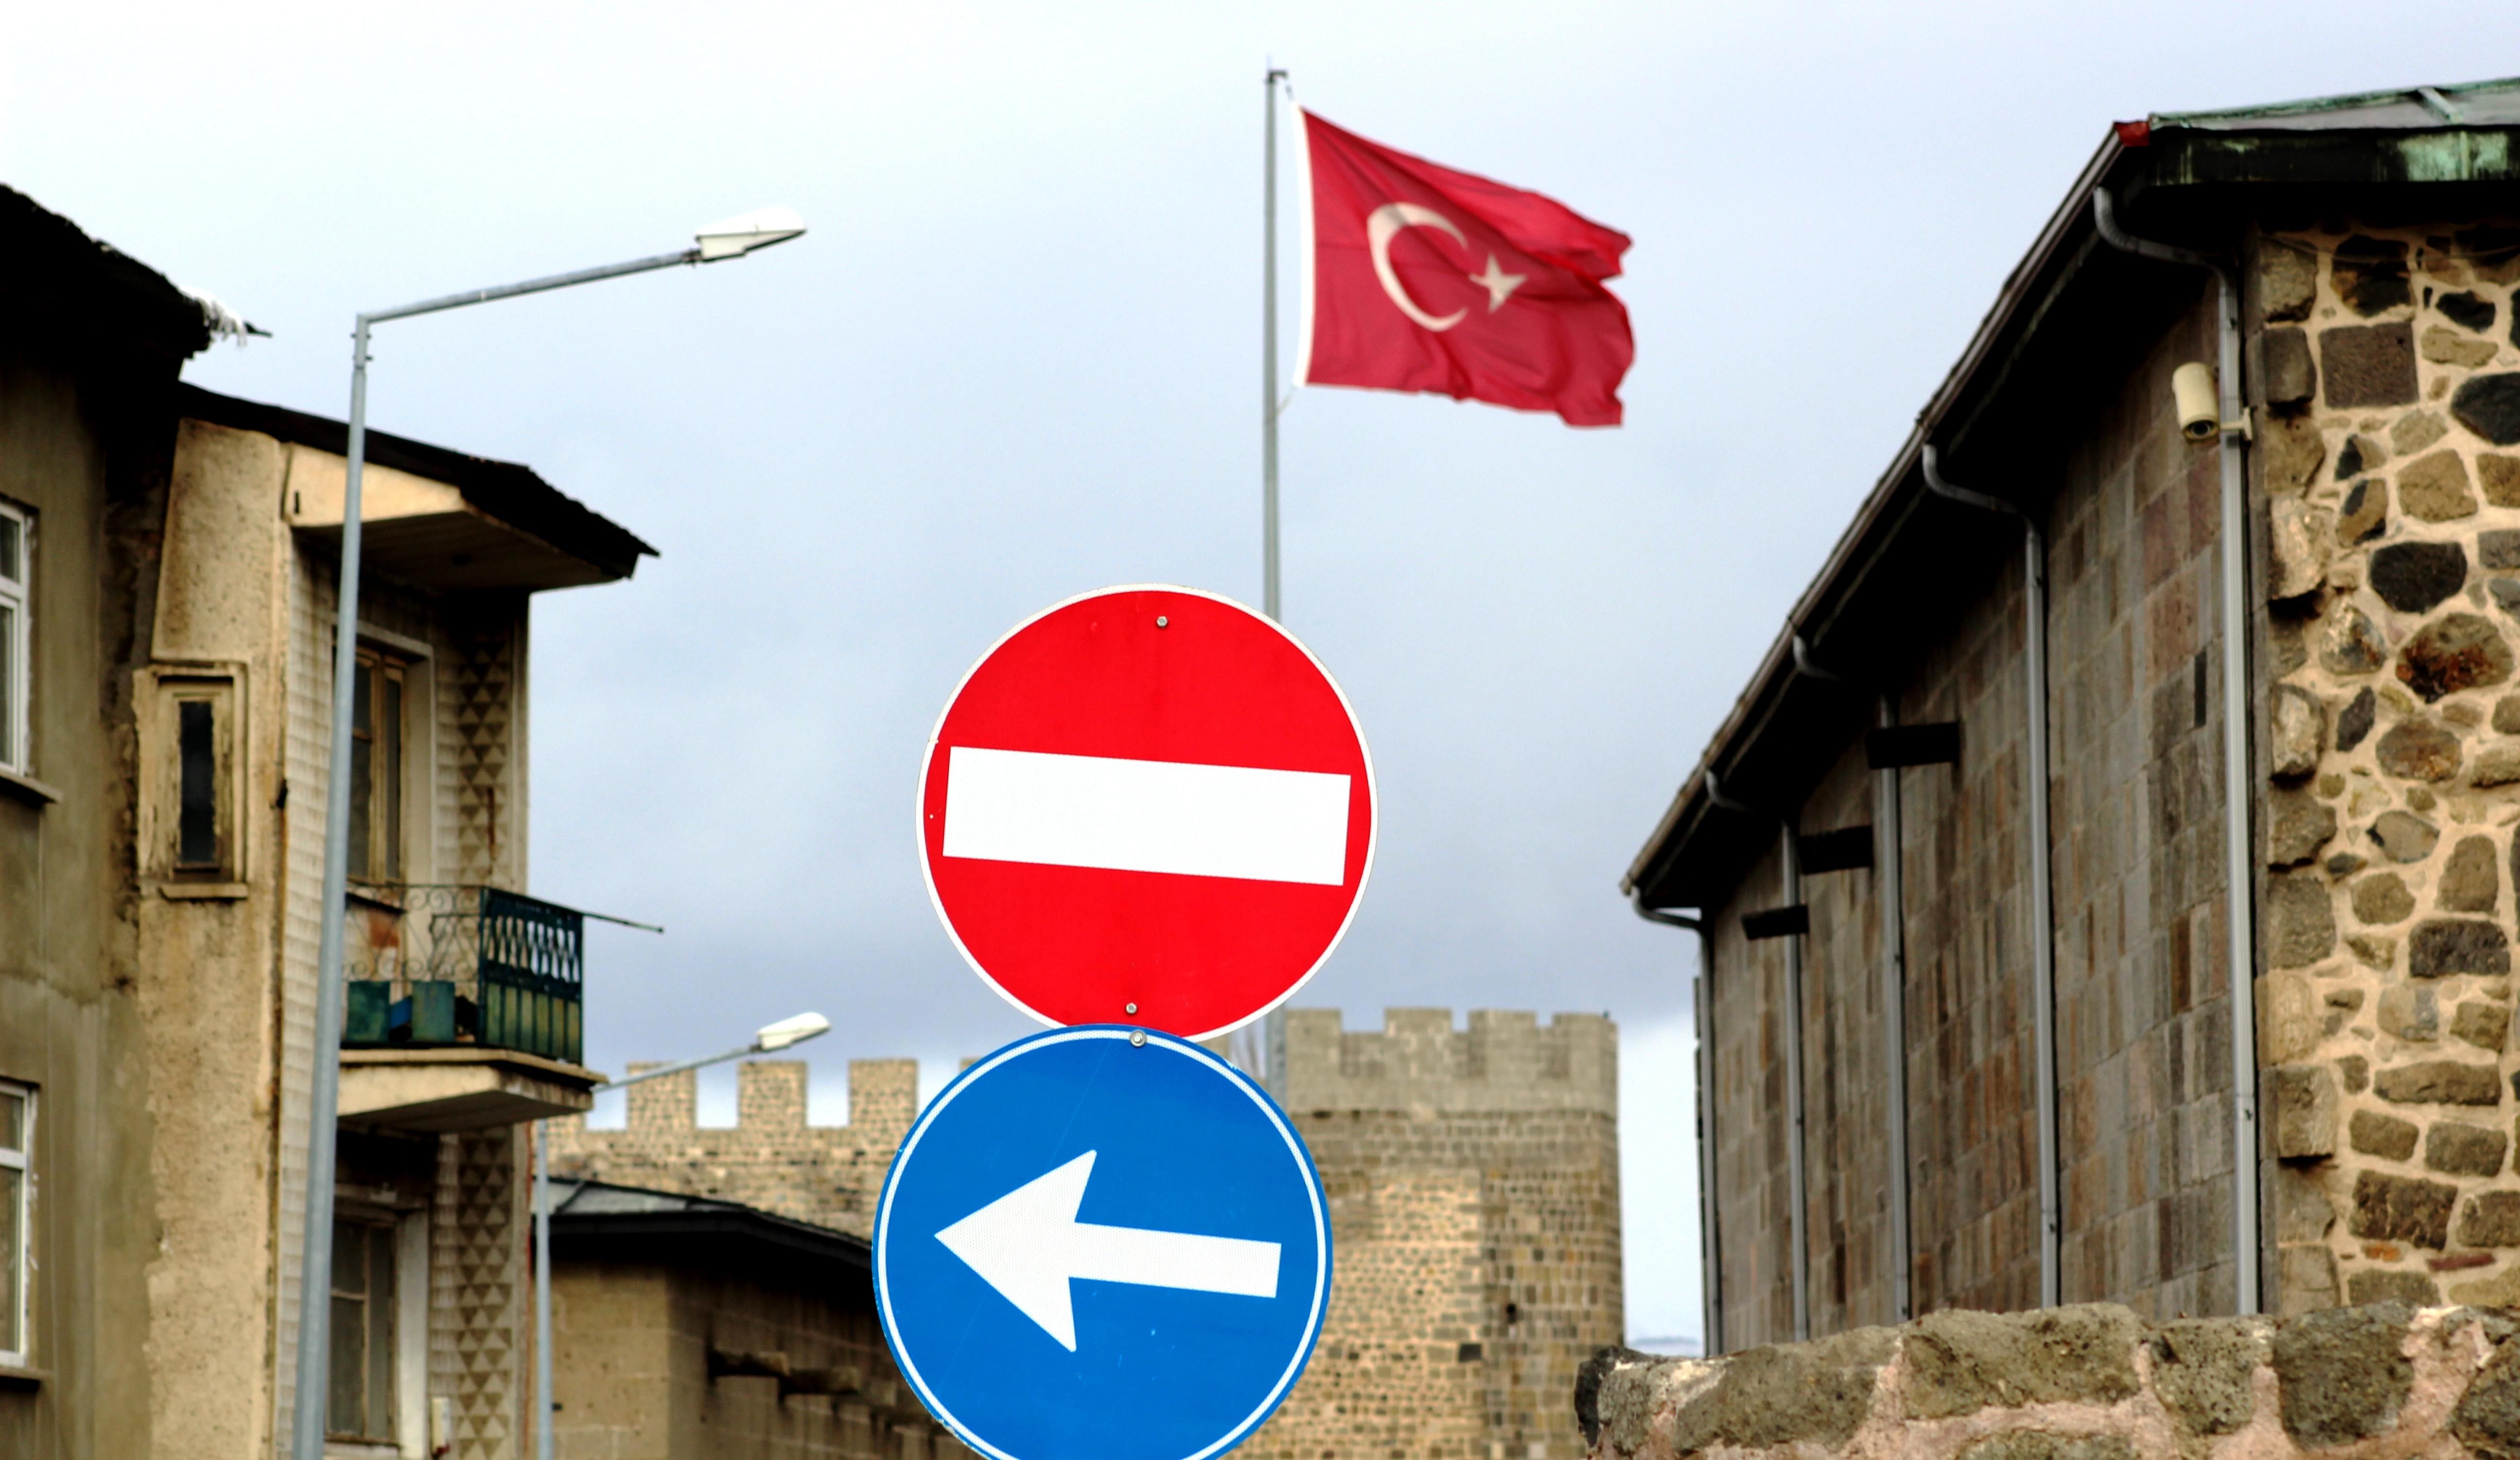 Как сэкономить деньги и нервы в Турции: 5 секретов успешного отдыха - Отпуск